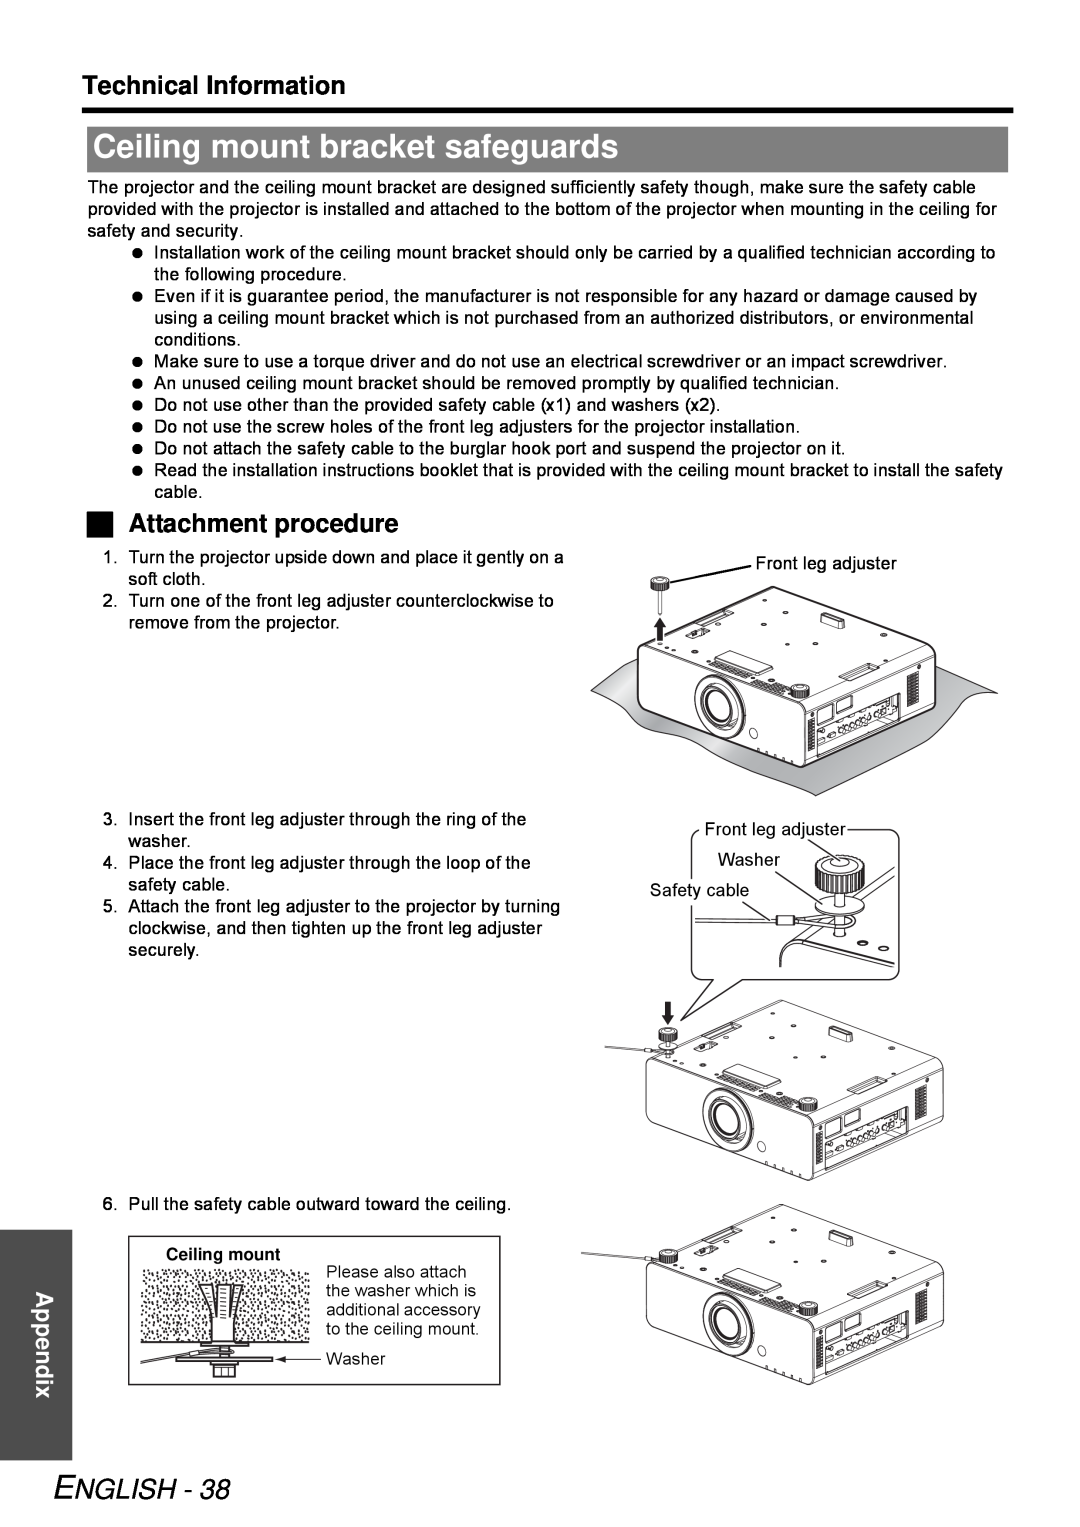 Panasonic PT-DZ6710E Ceiling mount bracket safeguards,  Attachment procedure, English, Technical Information, Appendix 